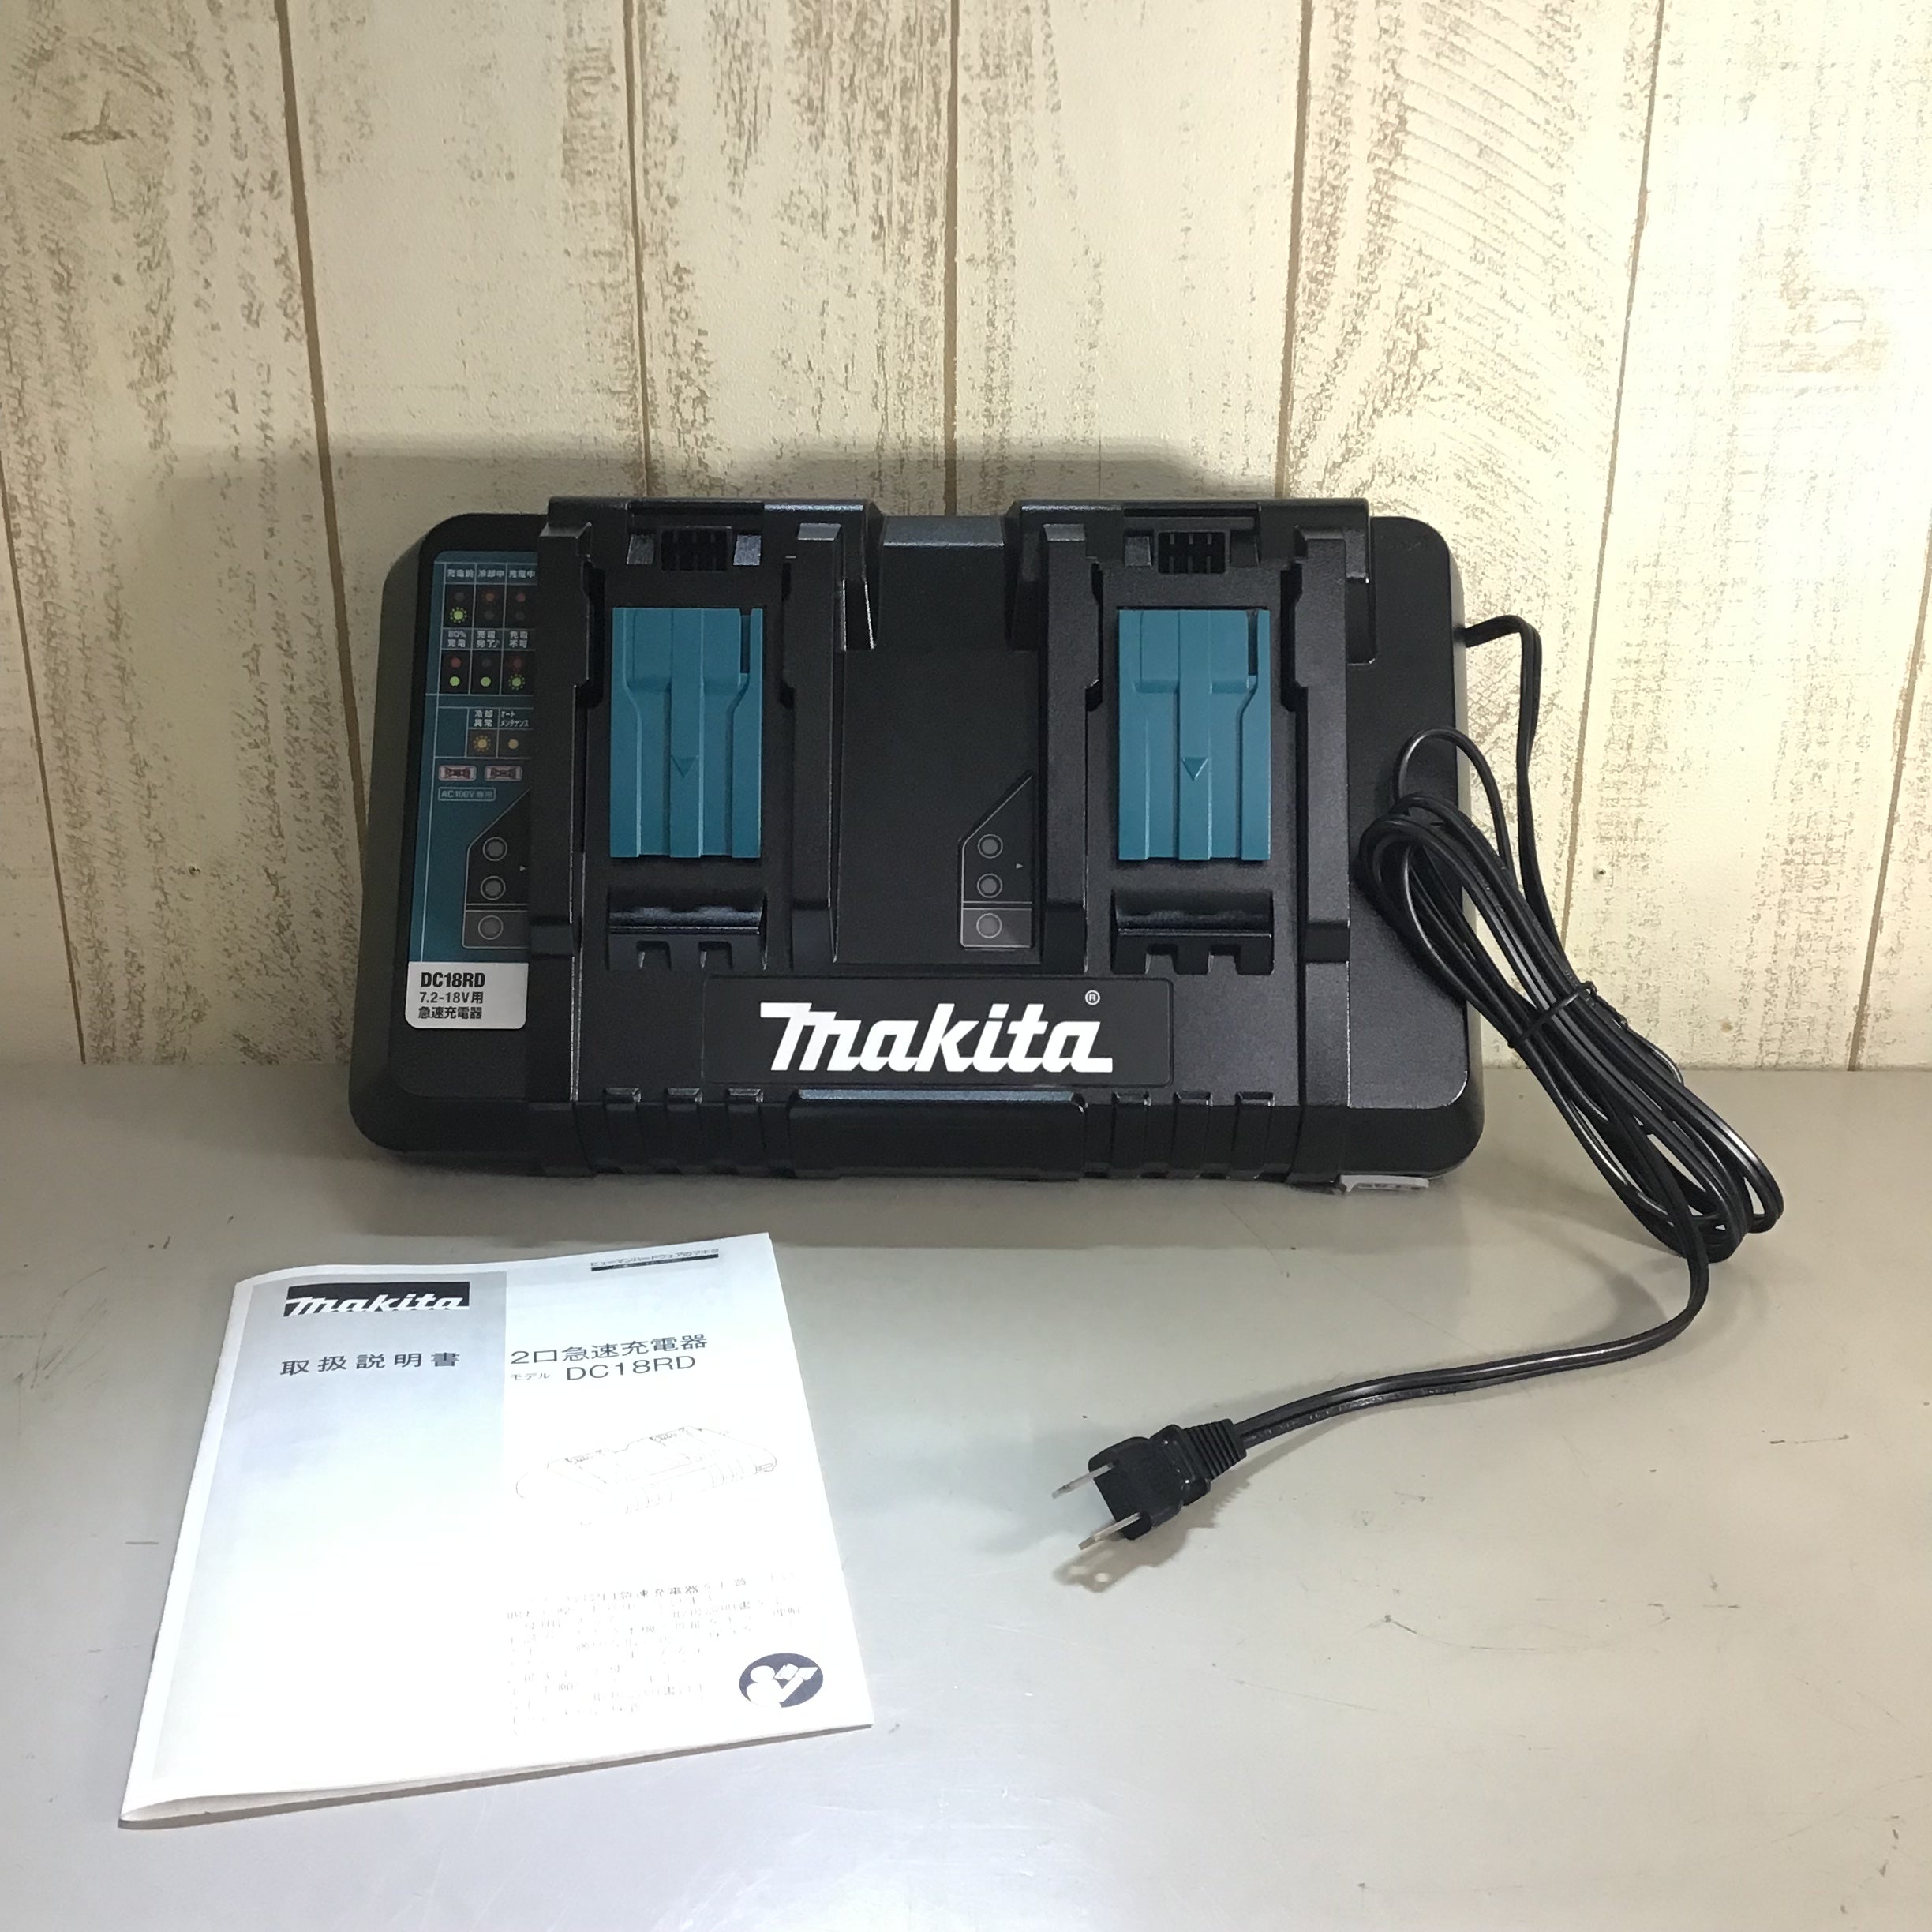 マキタ 2口 急速充電器 DC18RD makita - 工具